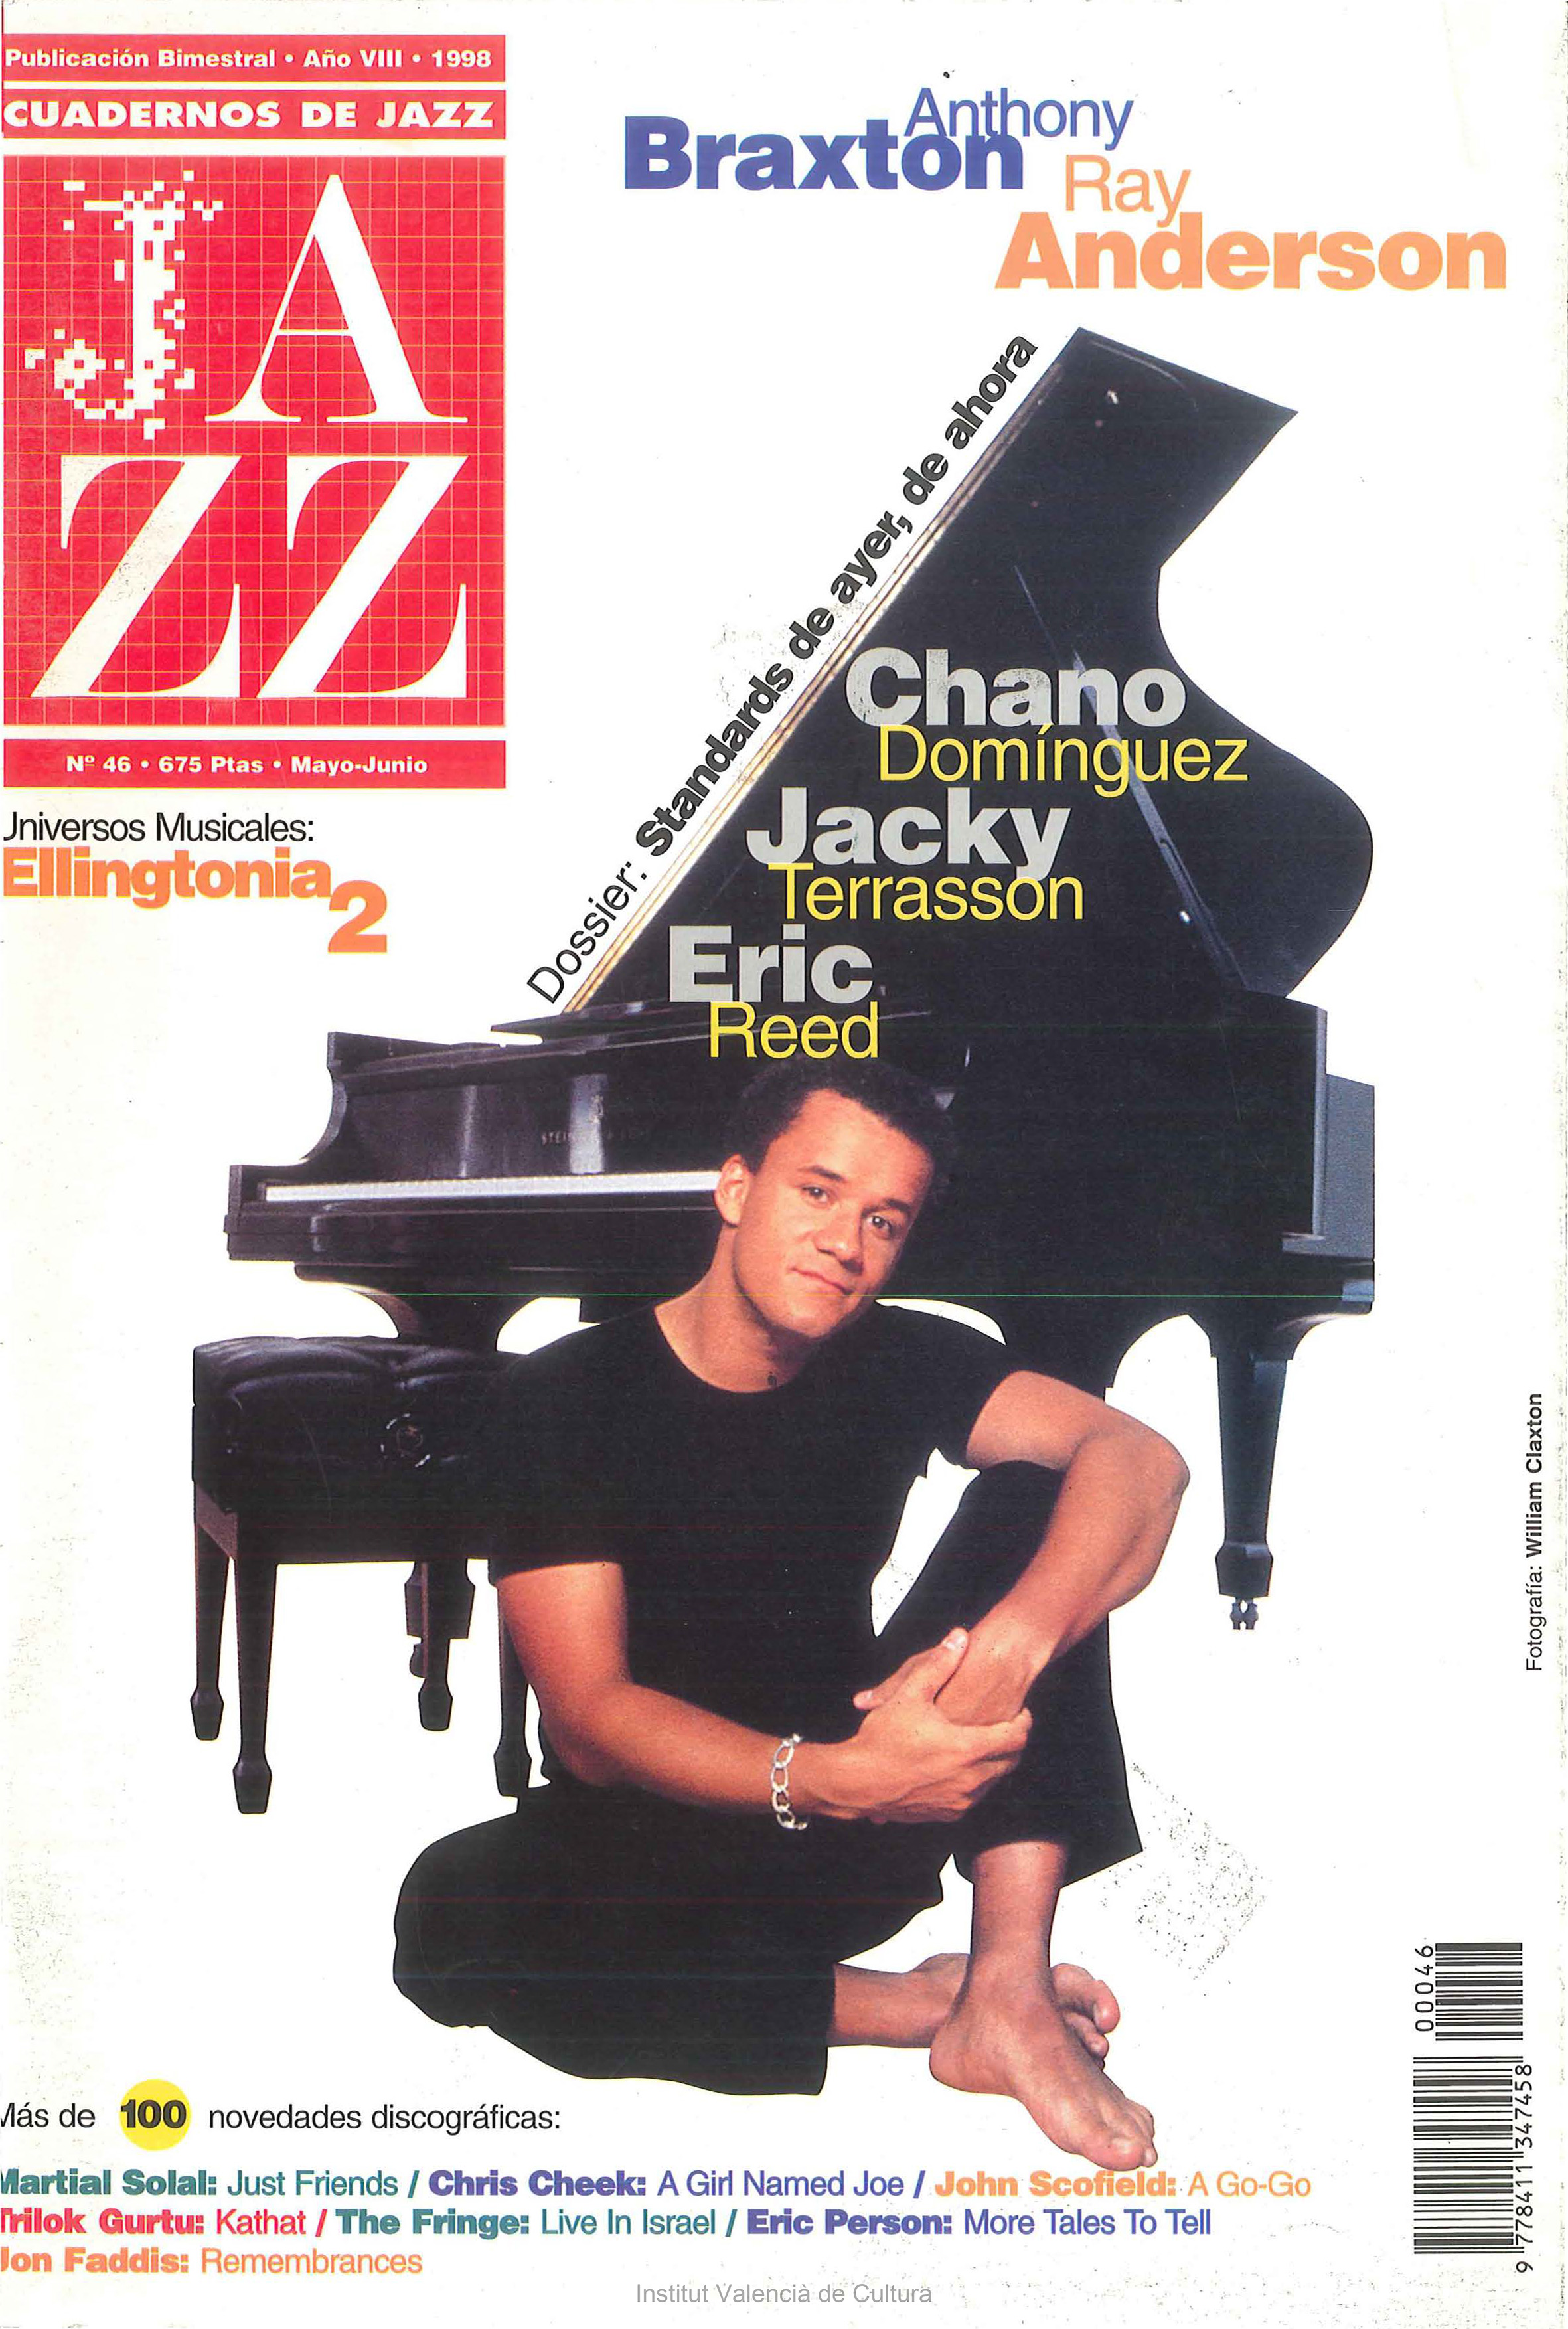 Cubierta del número 46 de la revista Cuadernos de Jazz